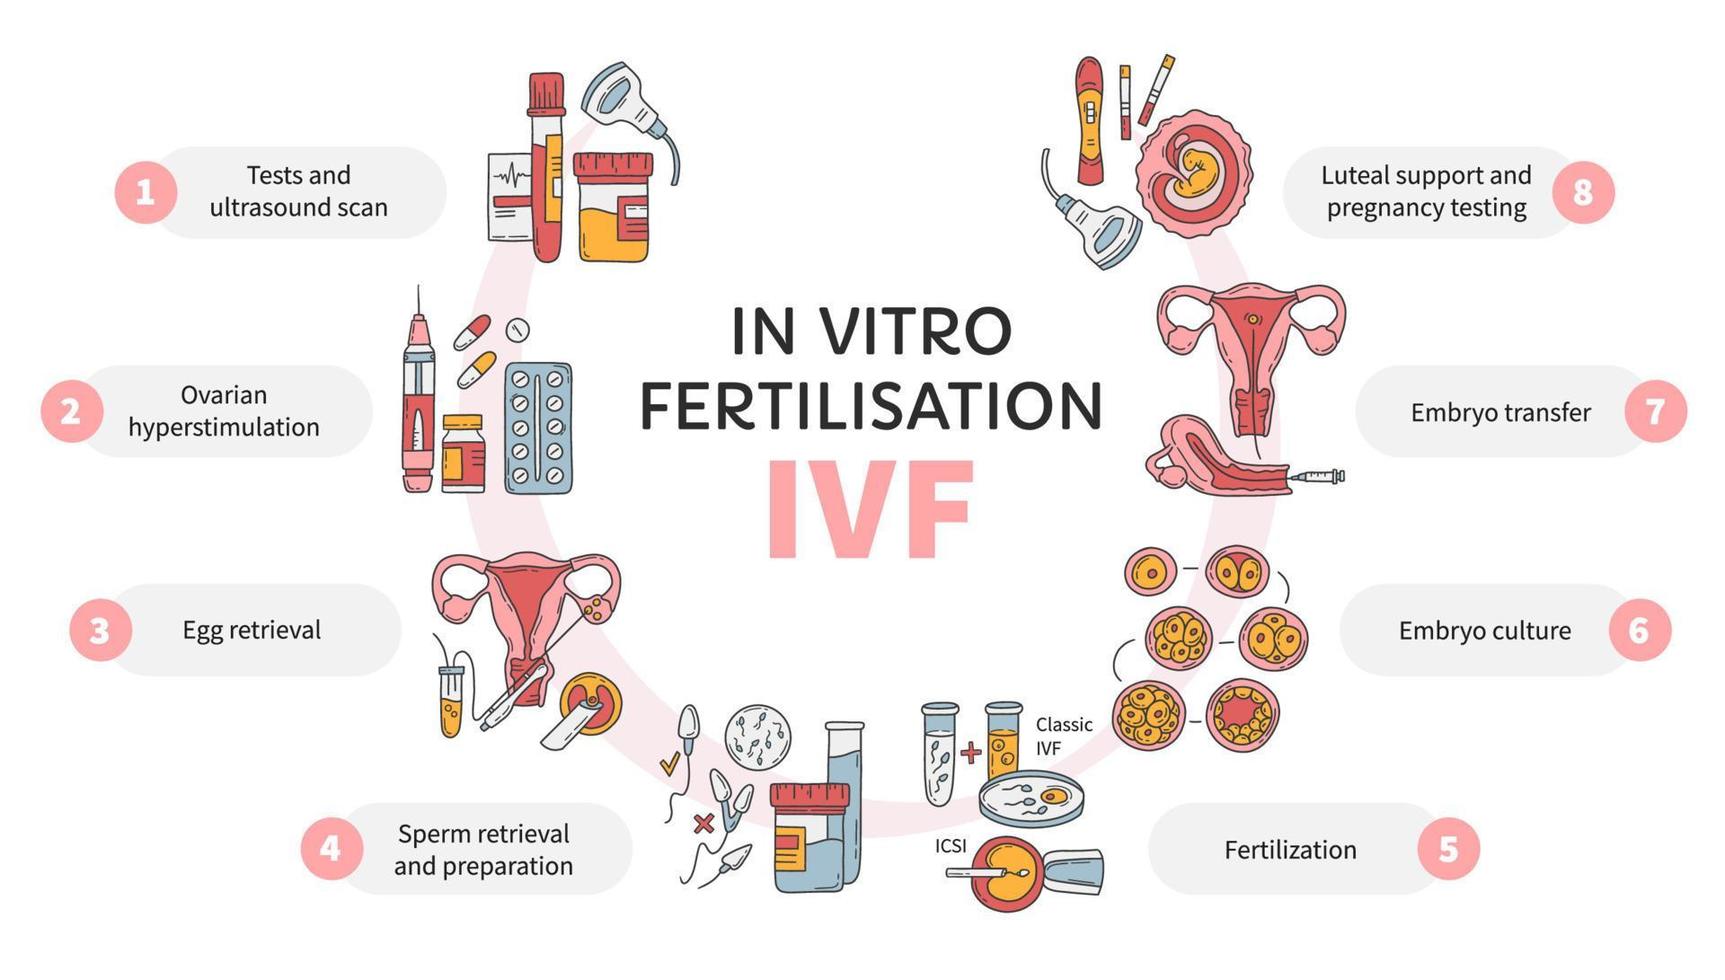 in-vitrofertilisatie ivf vector cirkel infographic, onvruchtbaarheidsbehandelingsschema. ovariële hyperstimulatie, kunstmatige inseminatie, embryocultuur, luteale ondersteuning. medische procedure voor zwangerschap